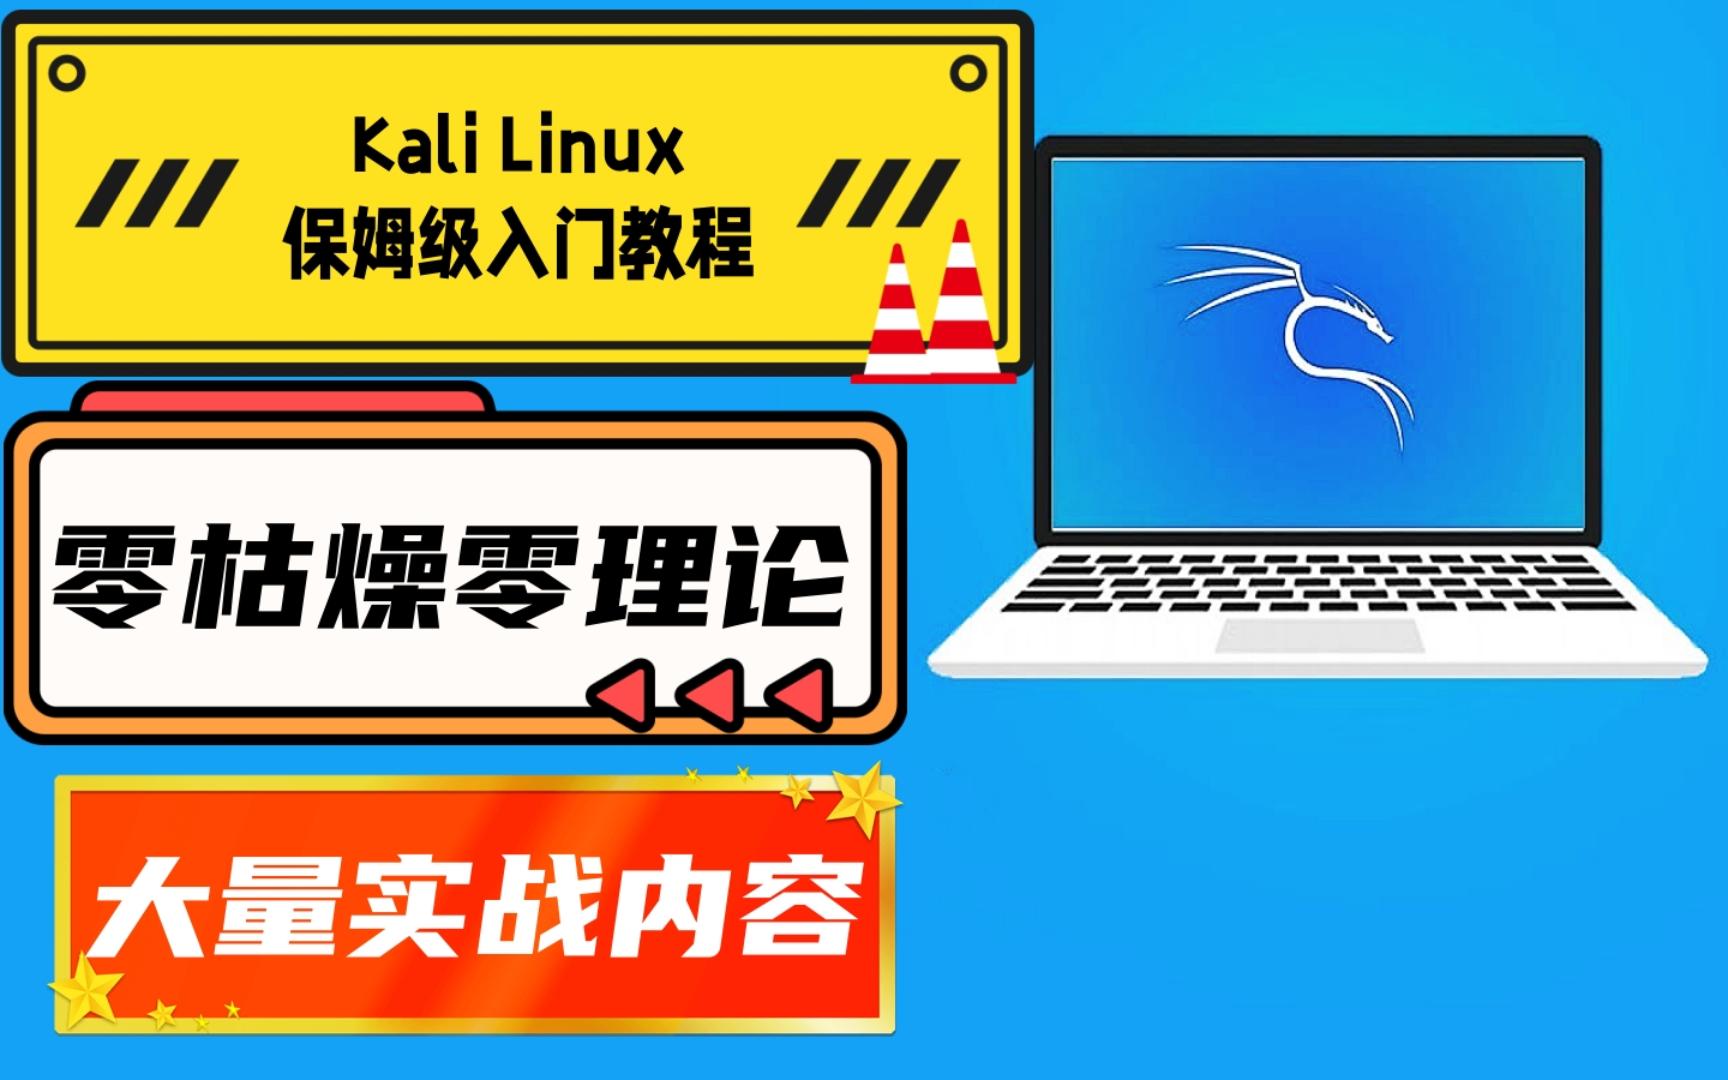 【极客之眼】全新Kali Linux零基础新手入门教程第一集